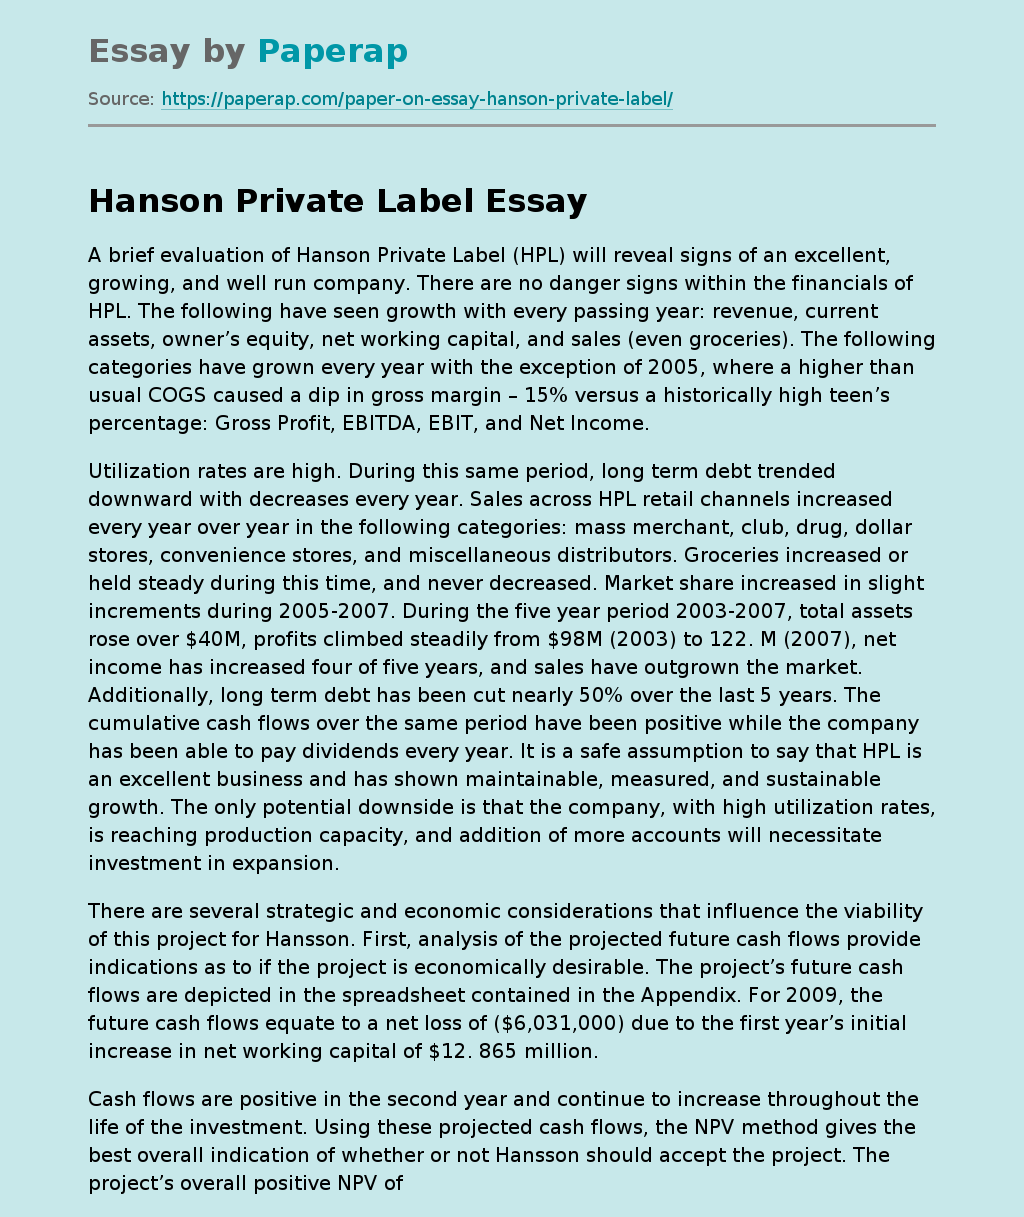 A Brief Evaluation of Hanson Private Label